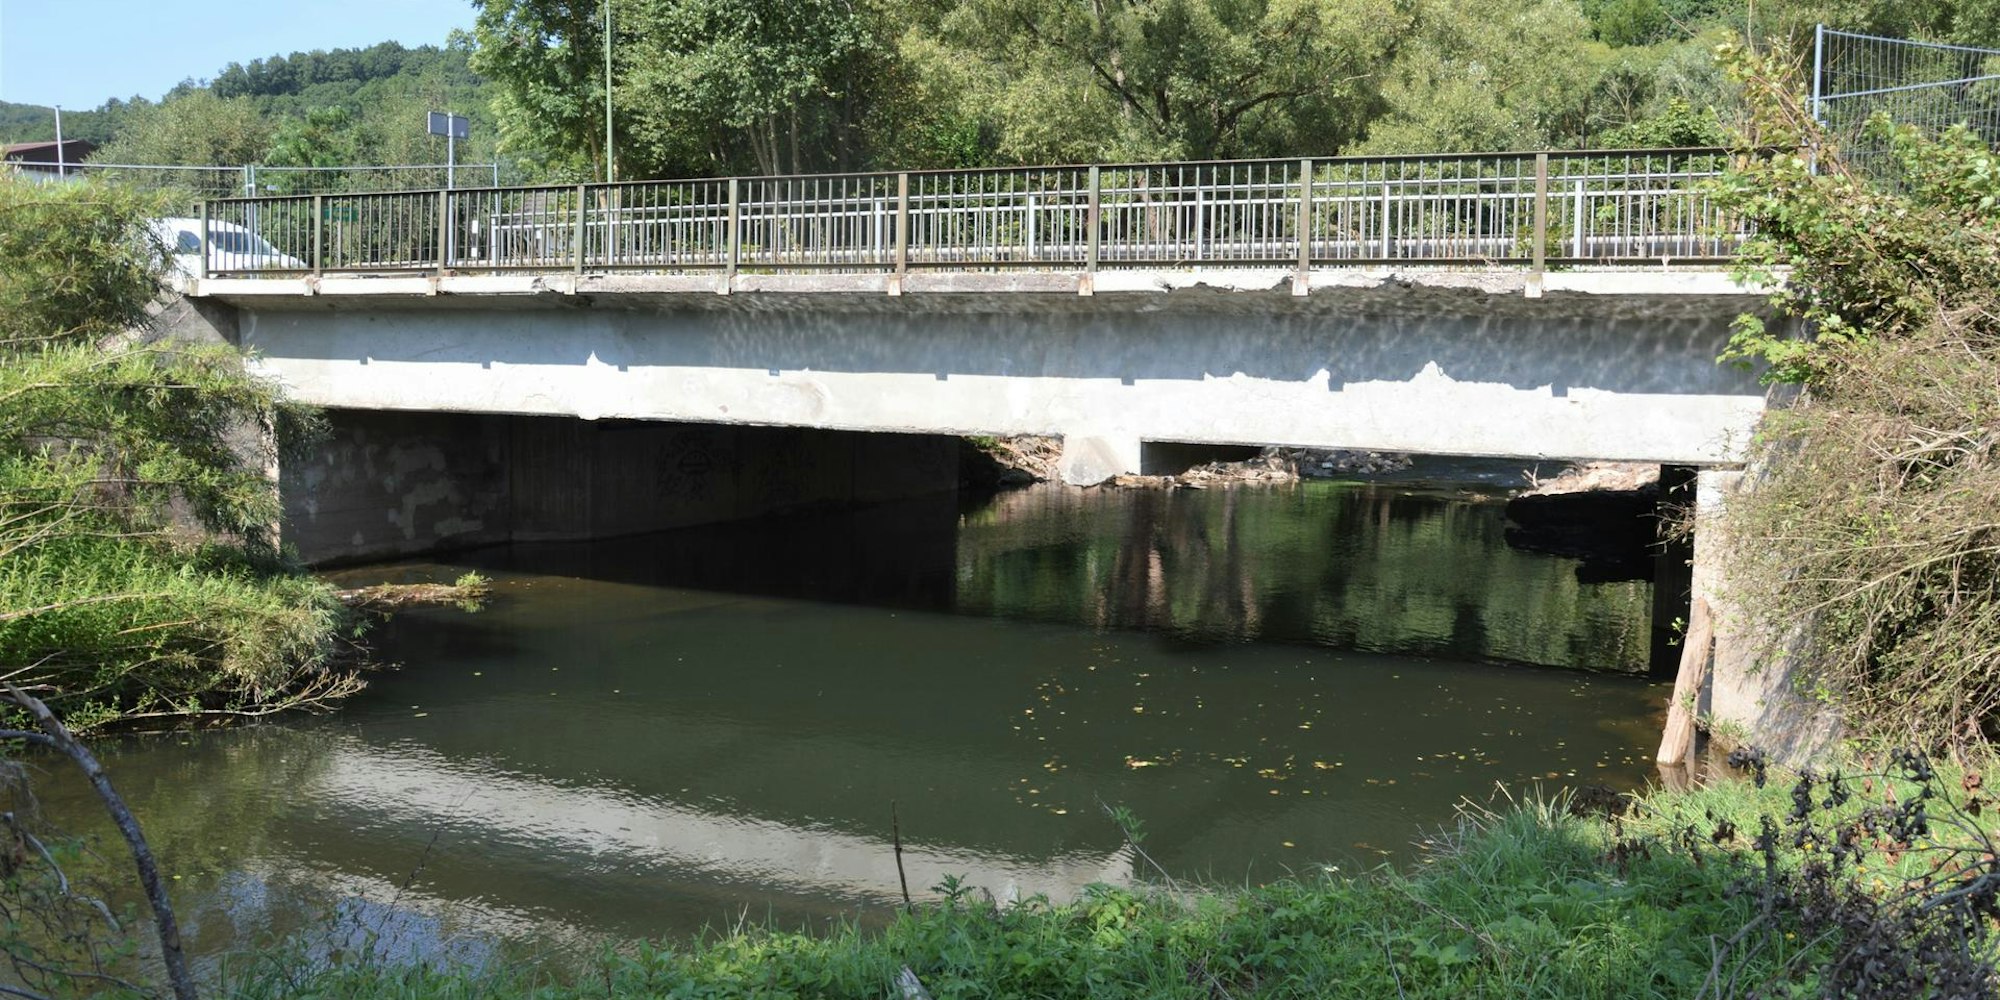 Die Urftbrücke am Ortseingang von Gemünd-Mauel ist einsturzgefährdet. Der Mittelpfeiler wurde weggerissen.